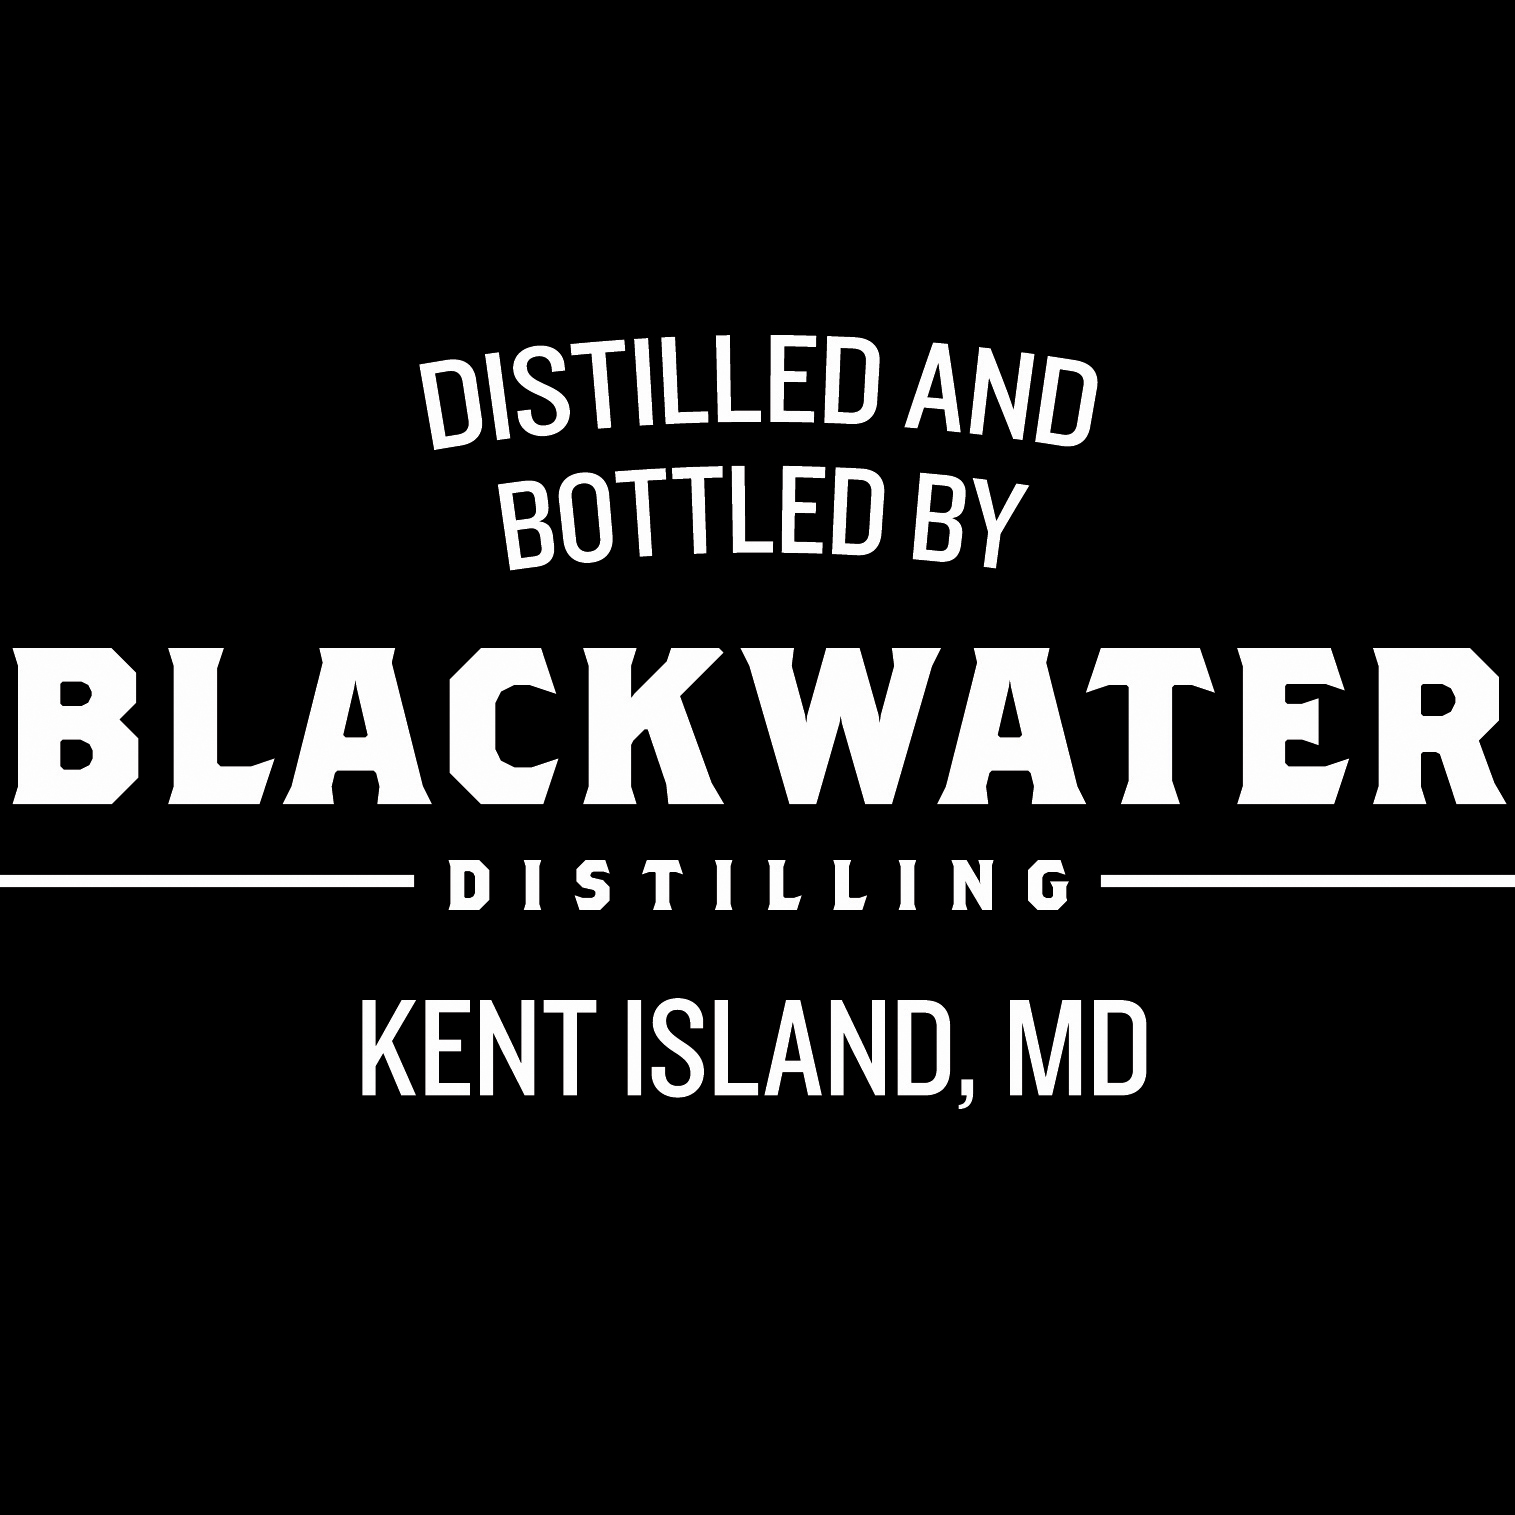 Blackwater Distilling